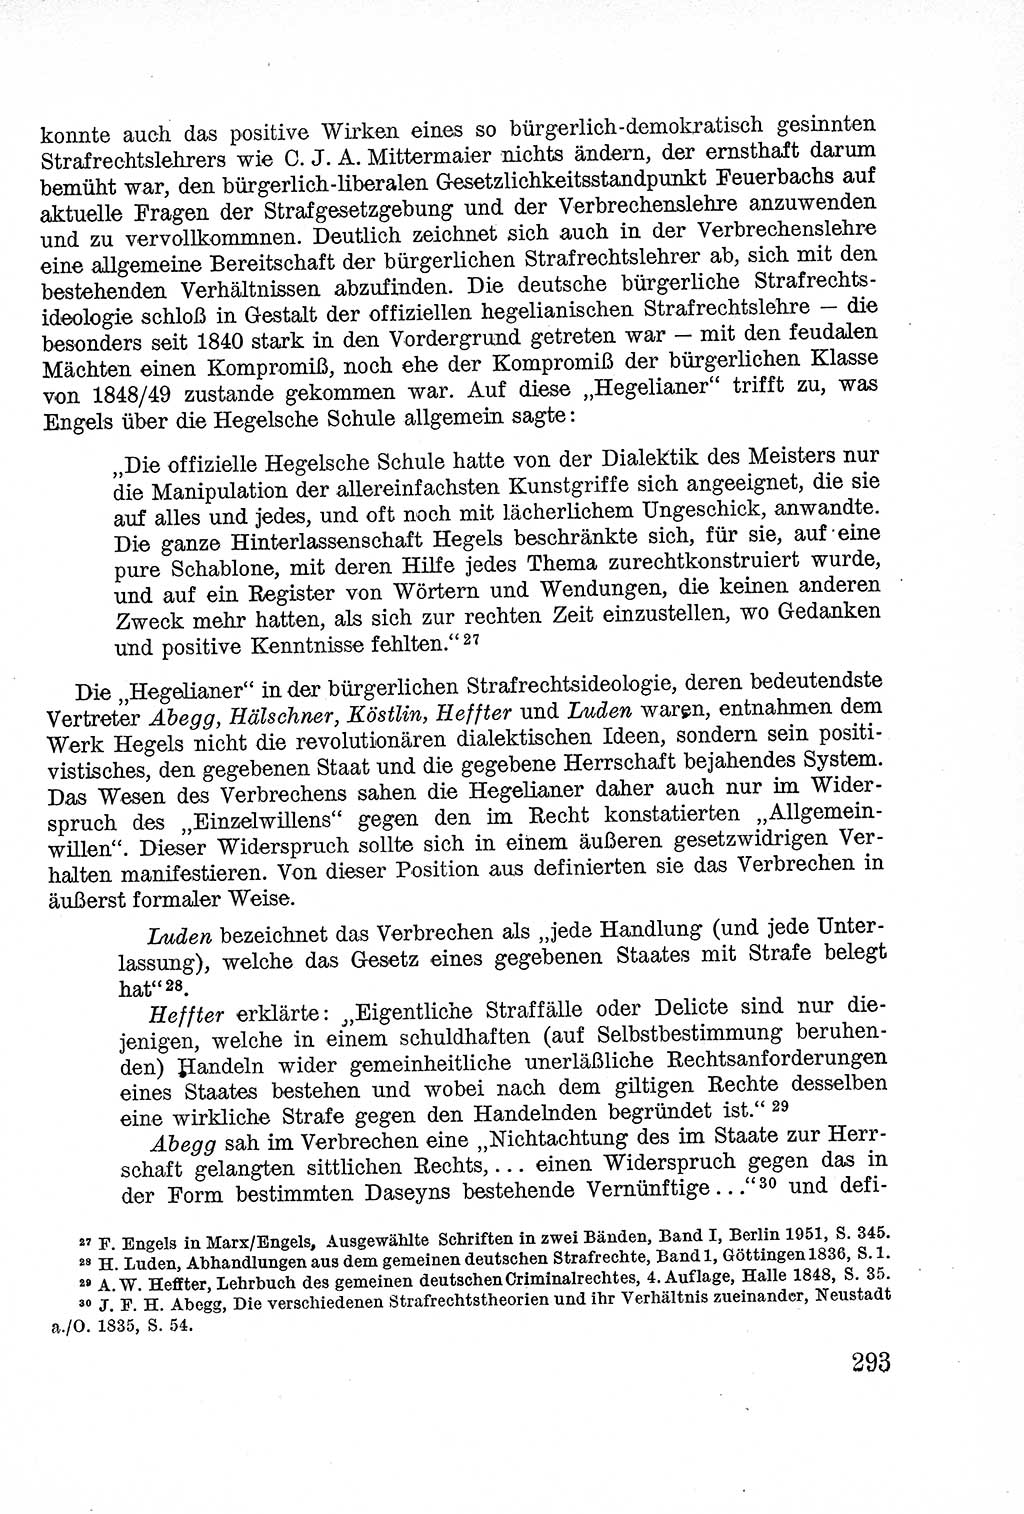 Lehrbuch des Strafrechts der Deutschen Demokratischen Republik (DDR), Allgemeiner Teil 1957, Seite 293 (Lb. Strafr. DDR AT 1957, S. 293)